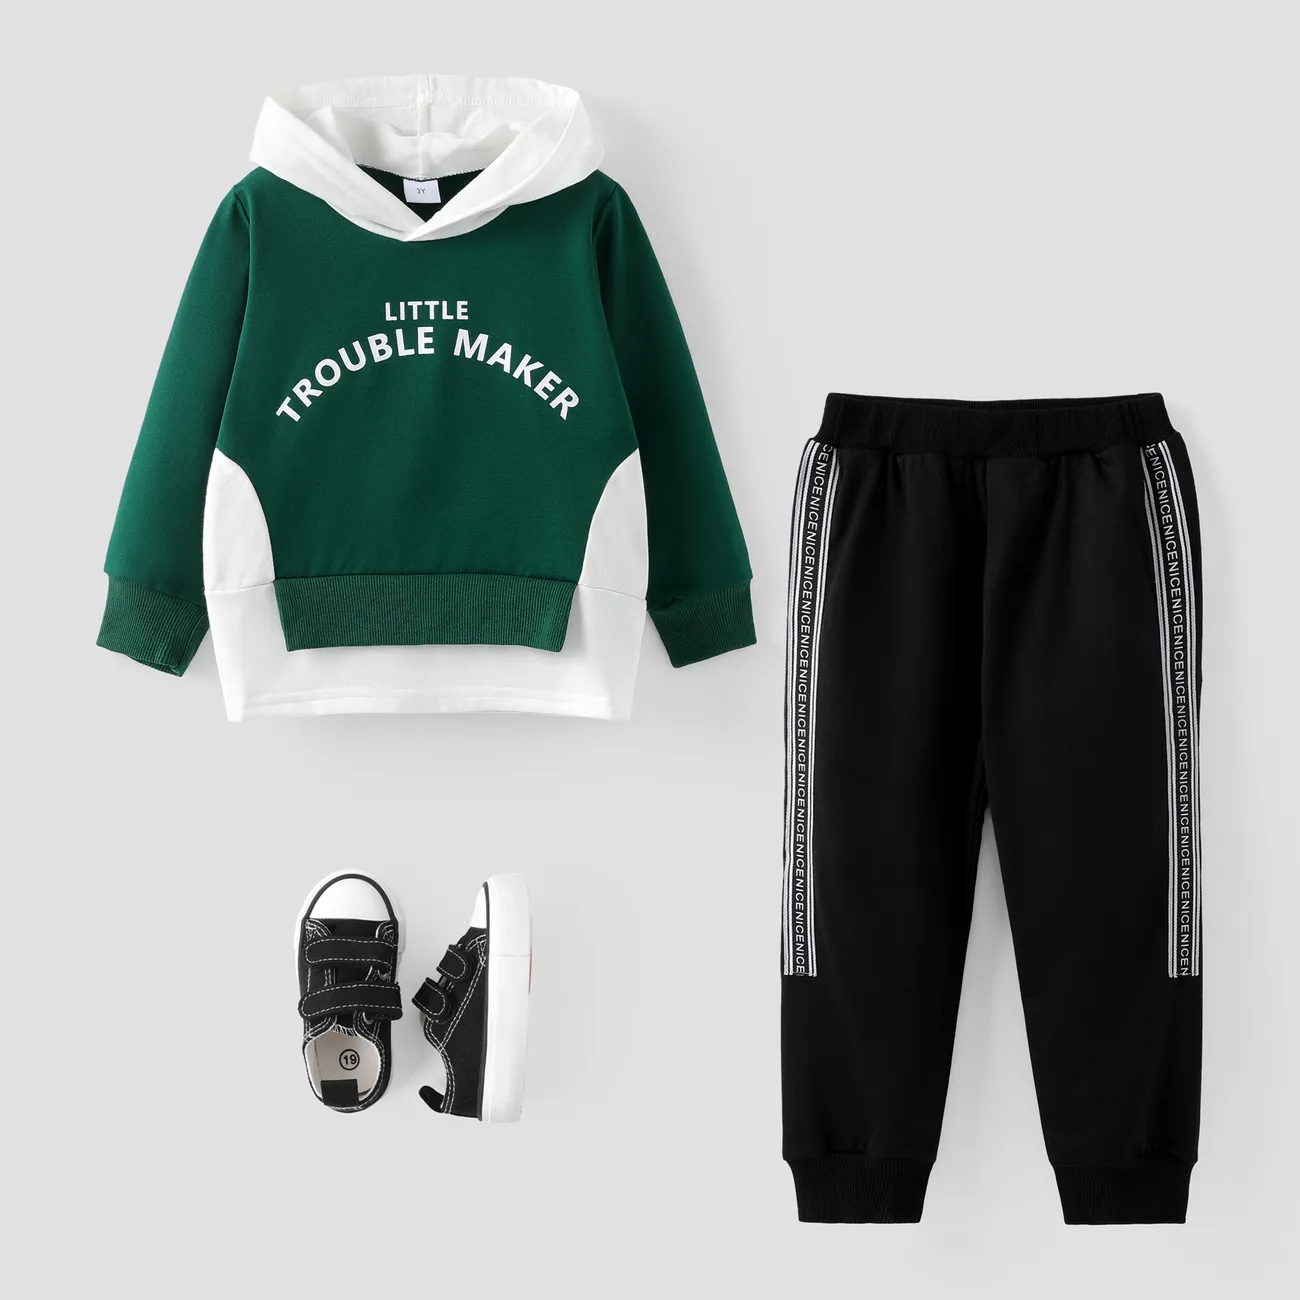 2 Stück Kleinkinder Jungen Unechter Zweiteiler Avantgardistisch Sweatshirt-Sets grün big image 1